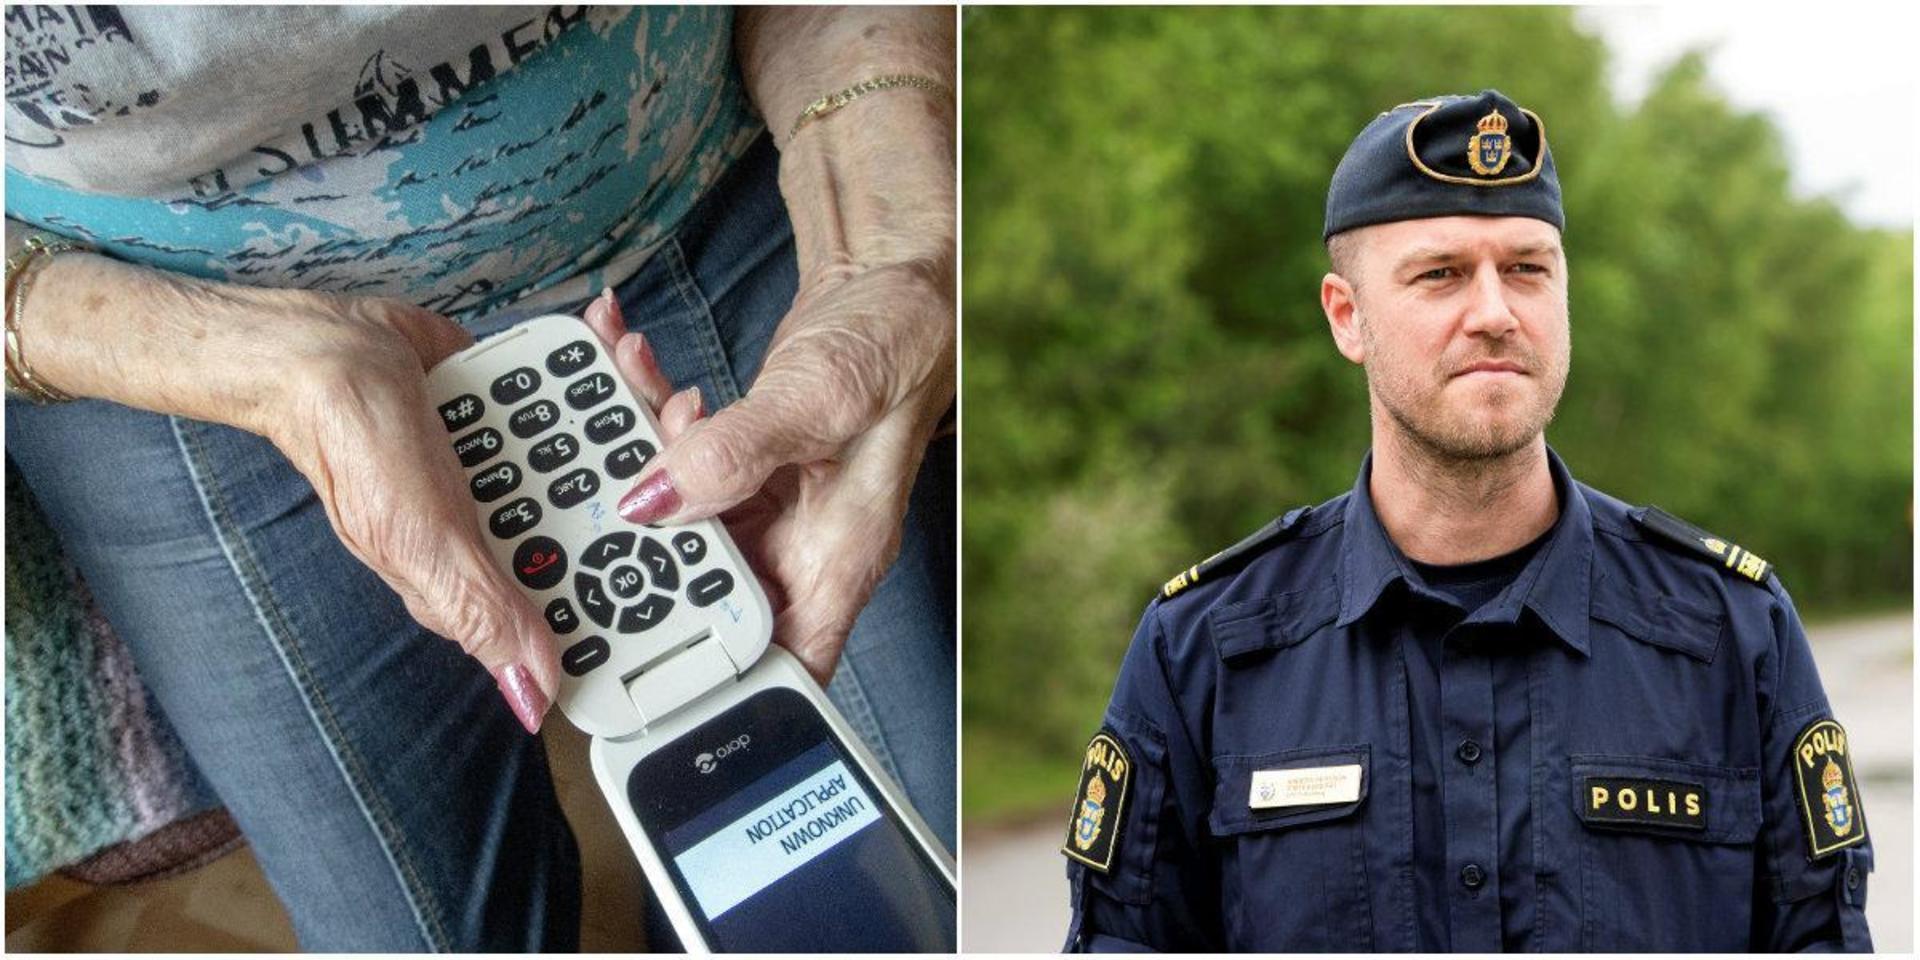 Anders Persson är stationsbefäl på polisen i Falkenberg och vill återigen varna för bedrägerier mot äldre. ”Personal från banken ringer aldrig upp och ber om personliga koder”. (Bilden till vänster är en arkivbild och har inget med den aktuella händelsen att göra).